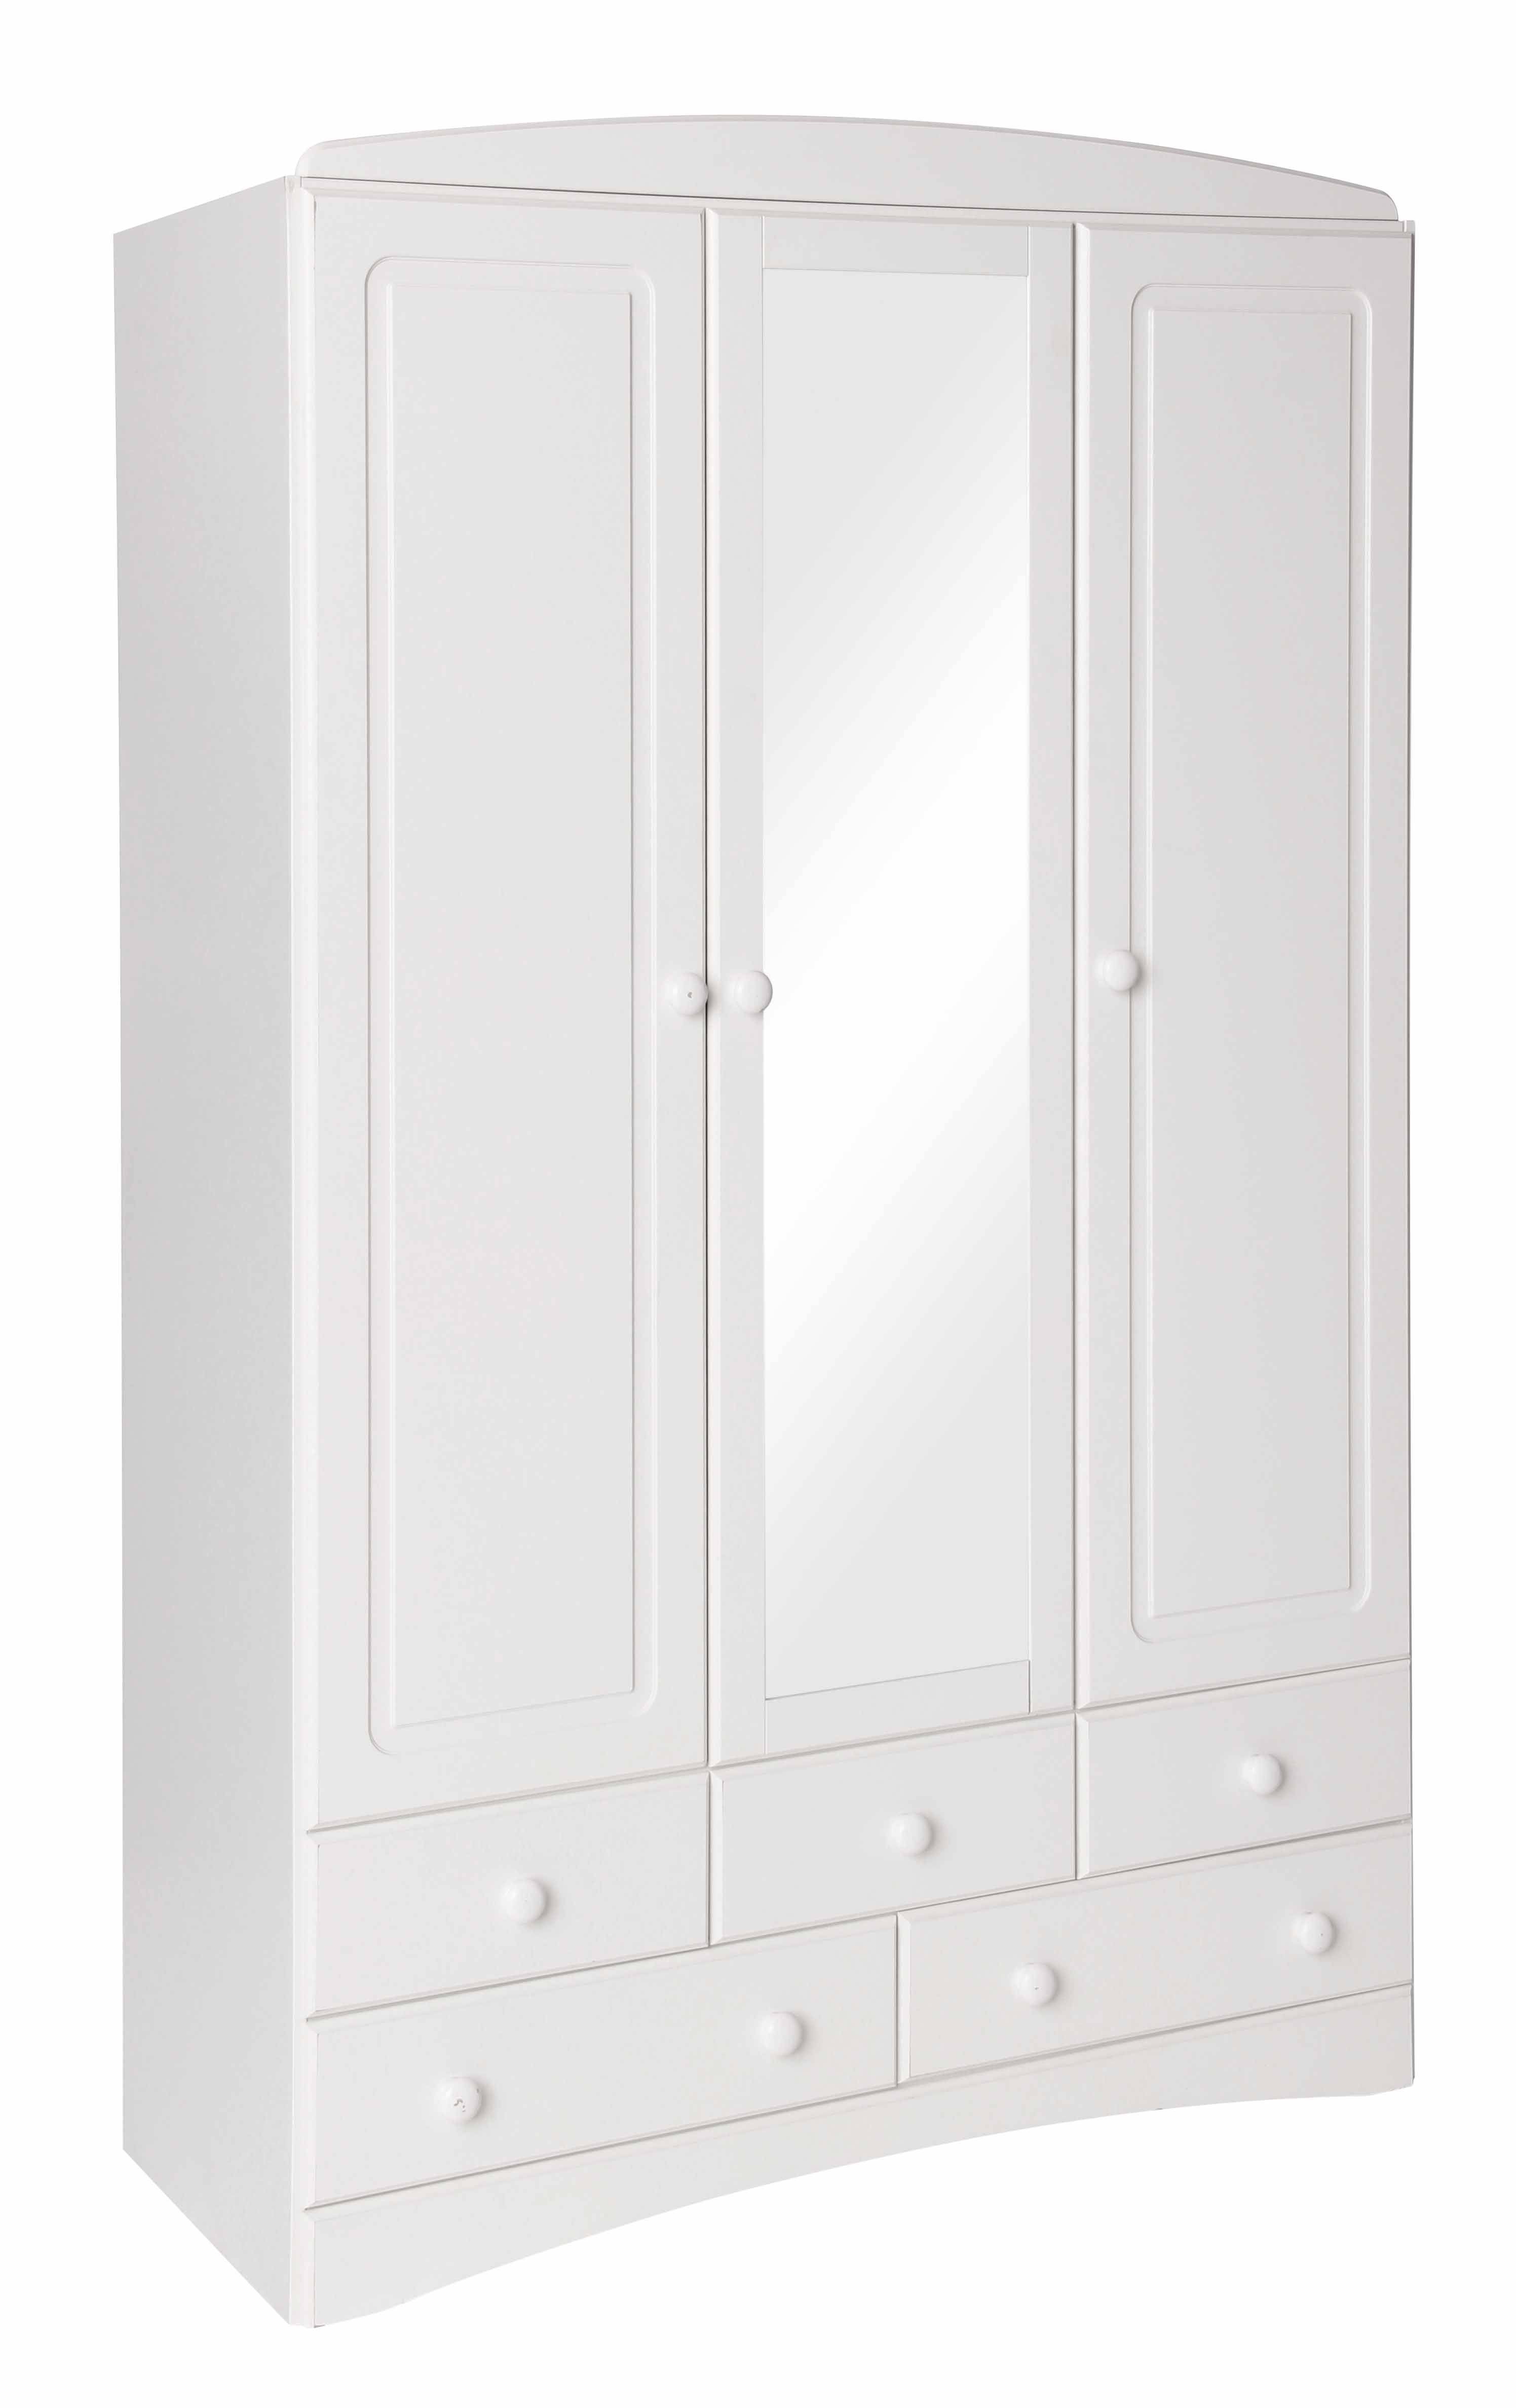 Scandi White 3 Door 5 Drawer Wardrobe With Mirror Intended For White 3 Door Mirrored Wardrobes (View 3 of 15)